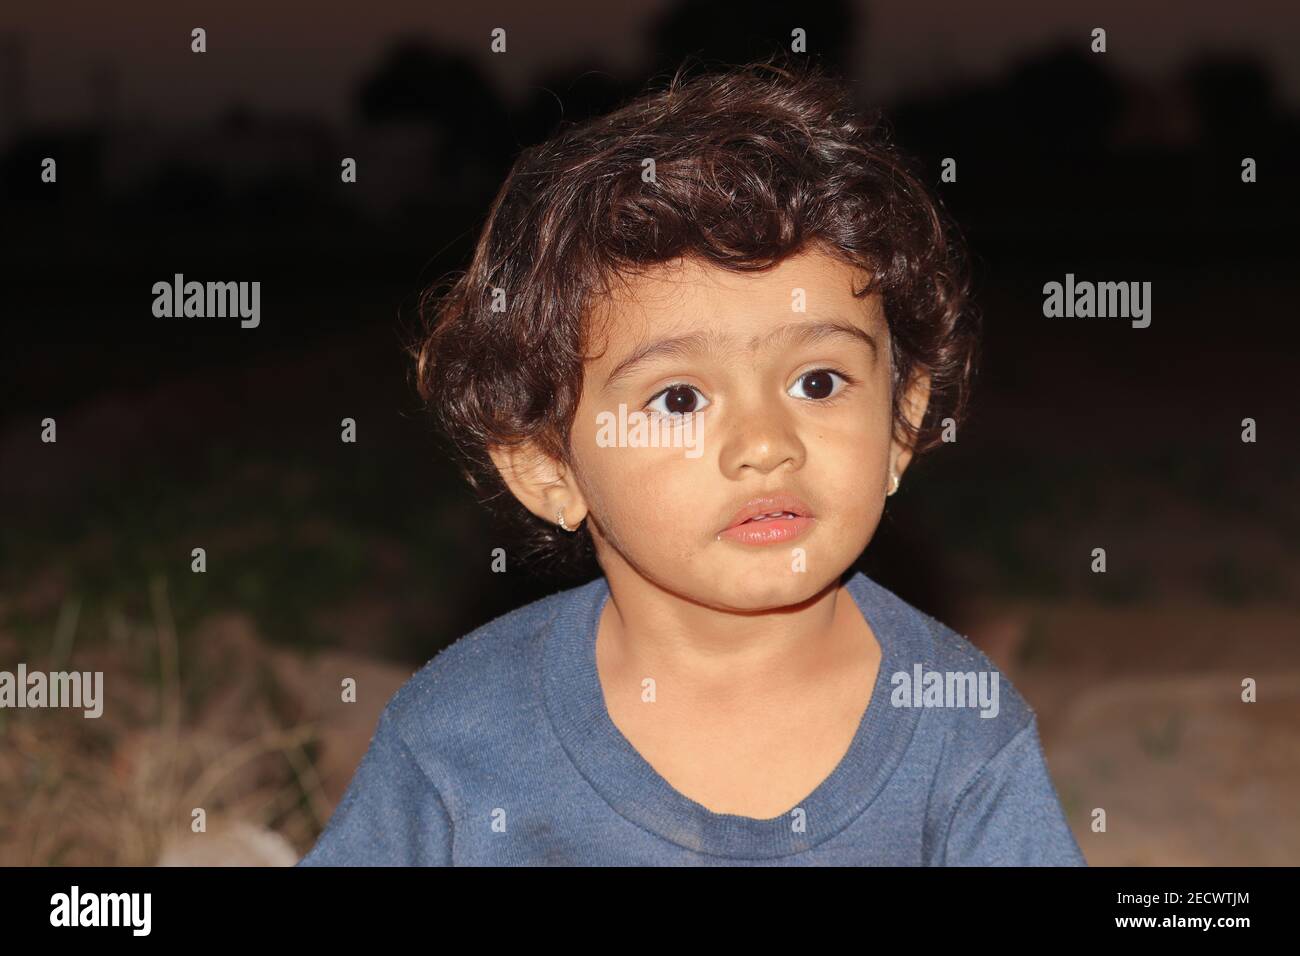 Un portrait de gros plan photo de beau petit garçon hindou jouant dans le jardin au coucher du soleil, inde. petit garçon asiatique dans la nature Banque D'Images